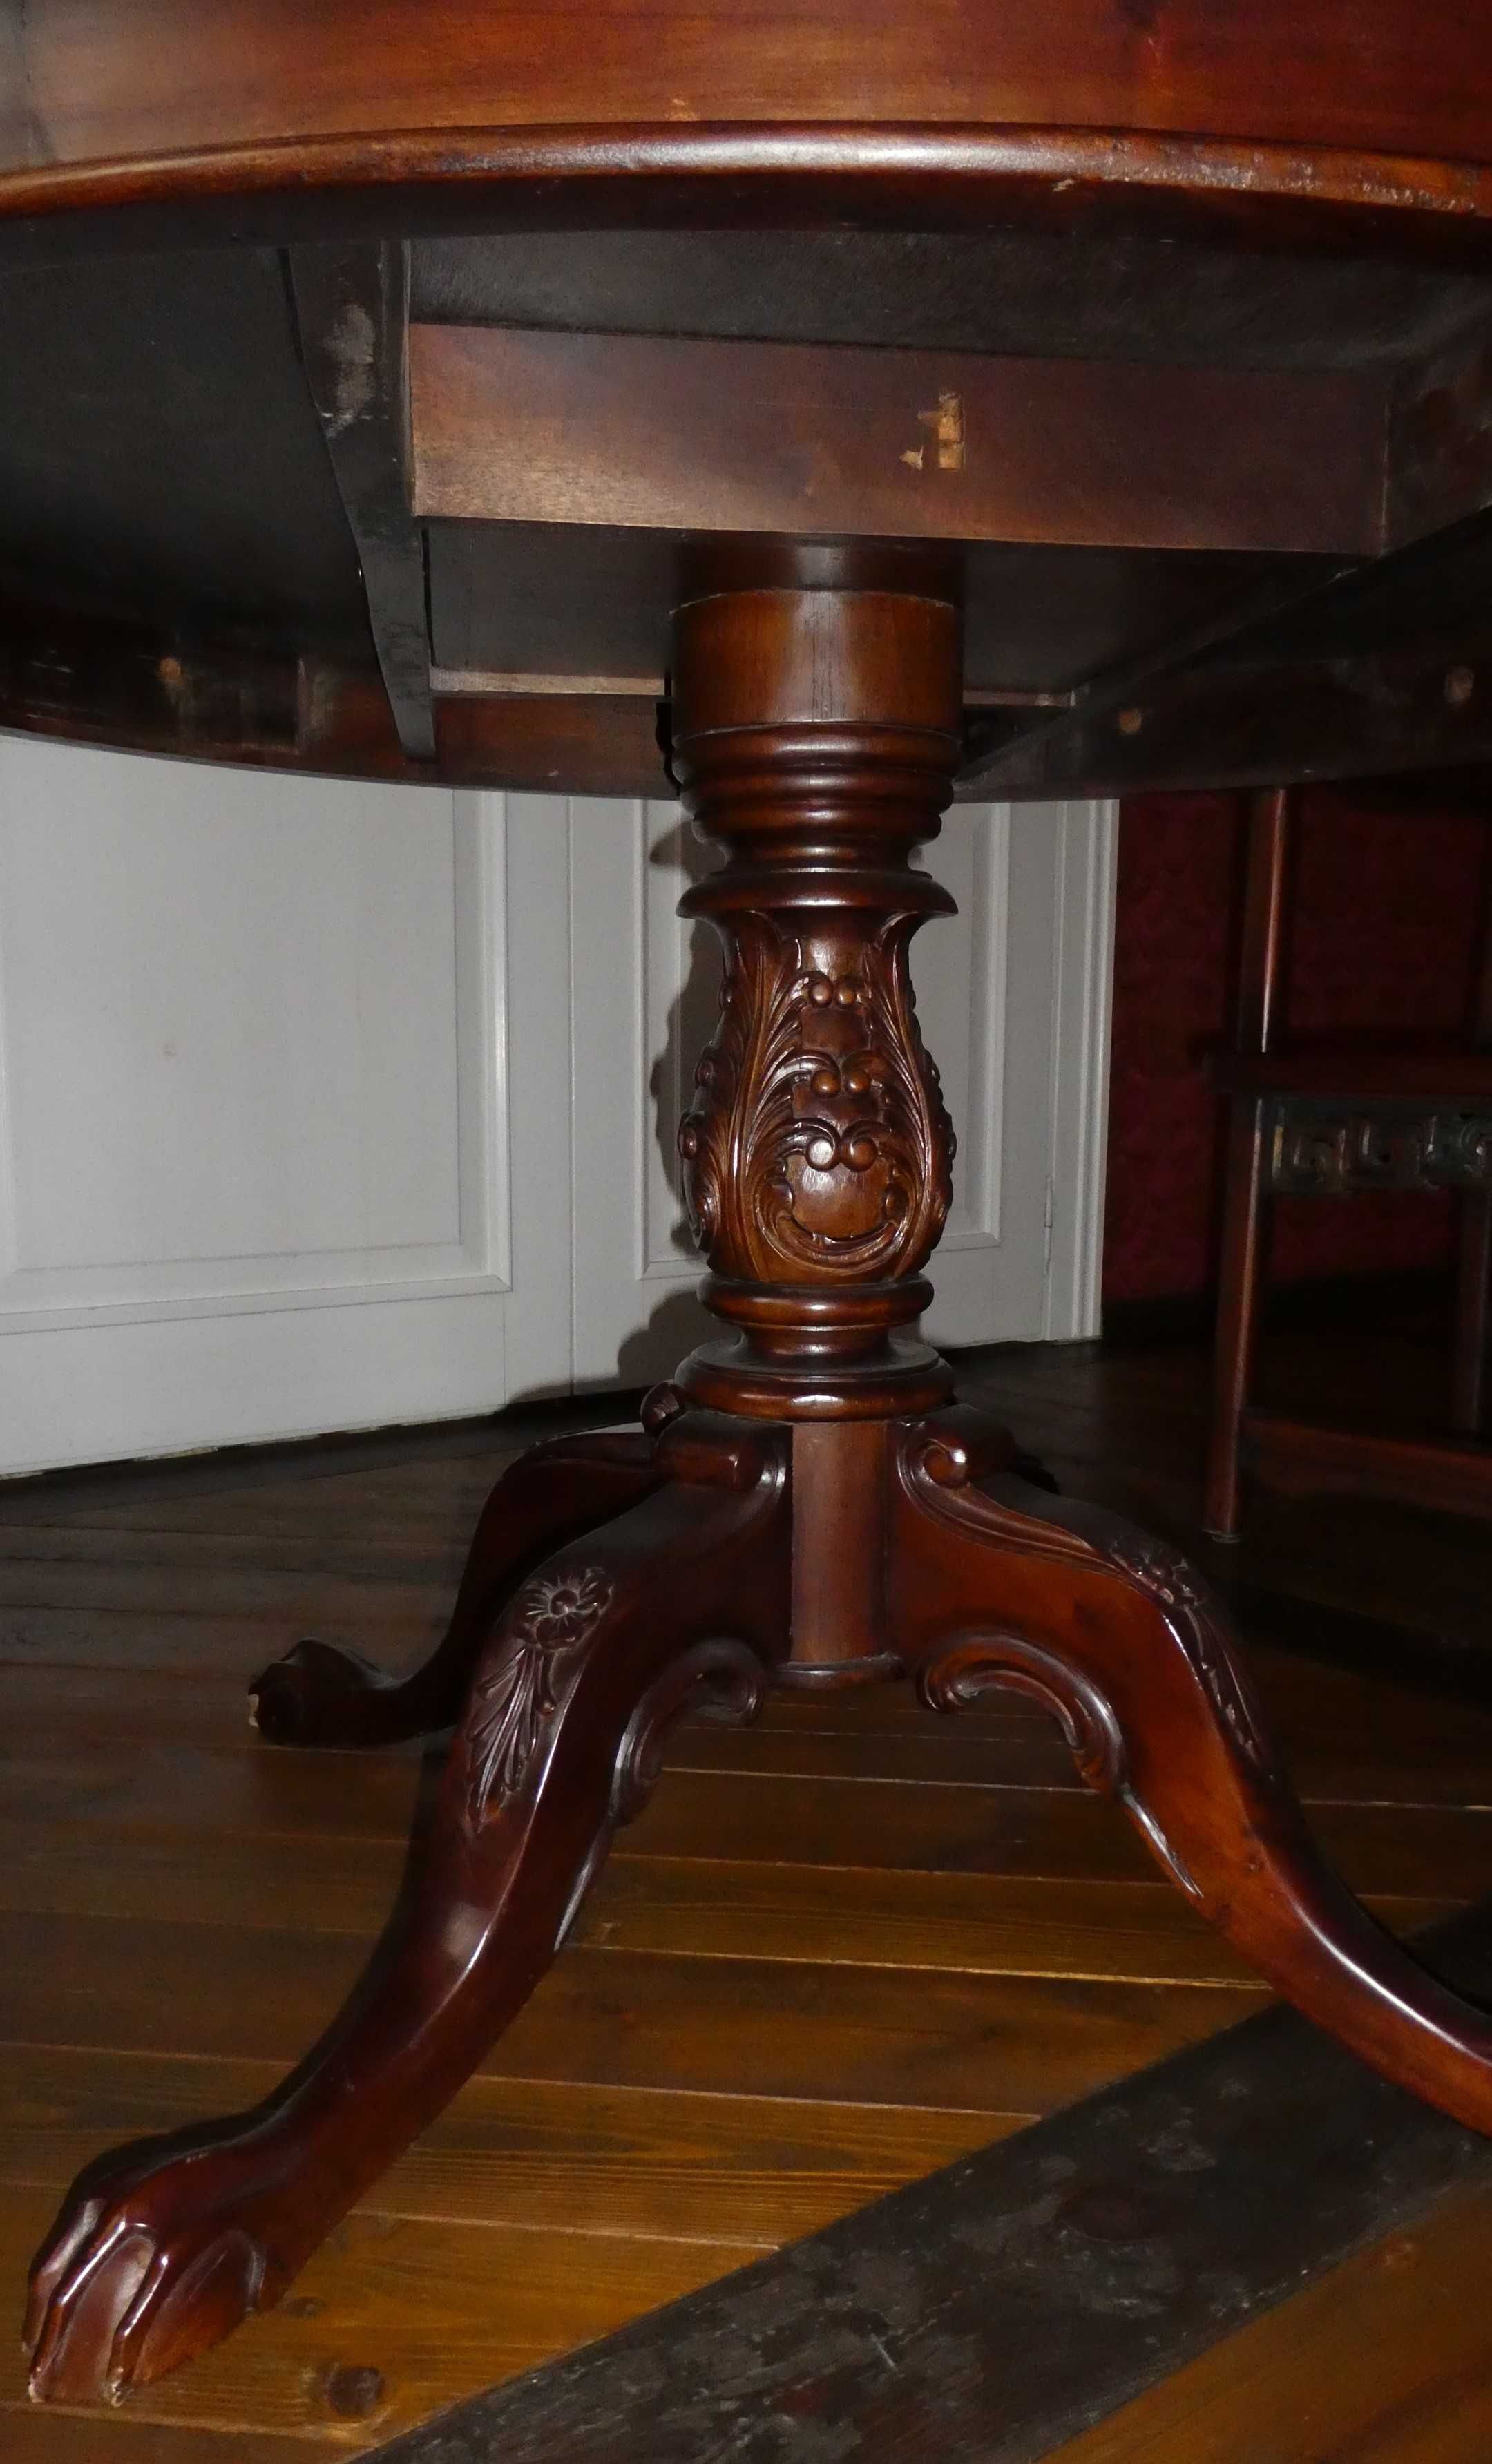 Stół drewniany Chippendale